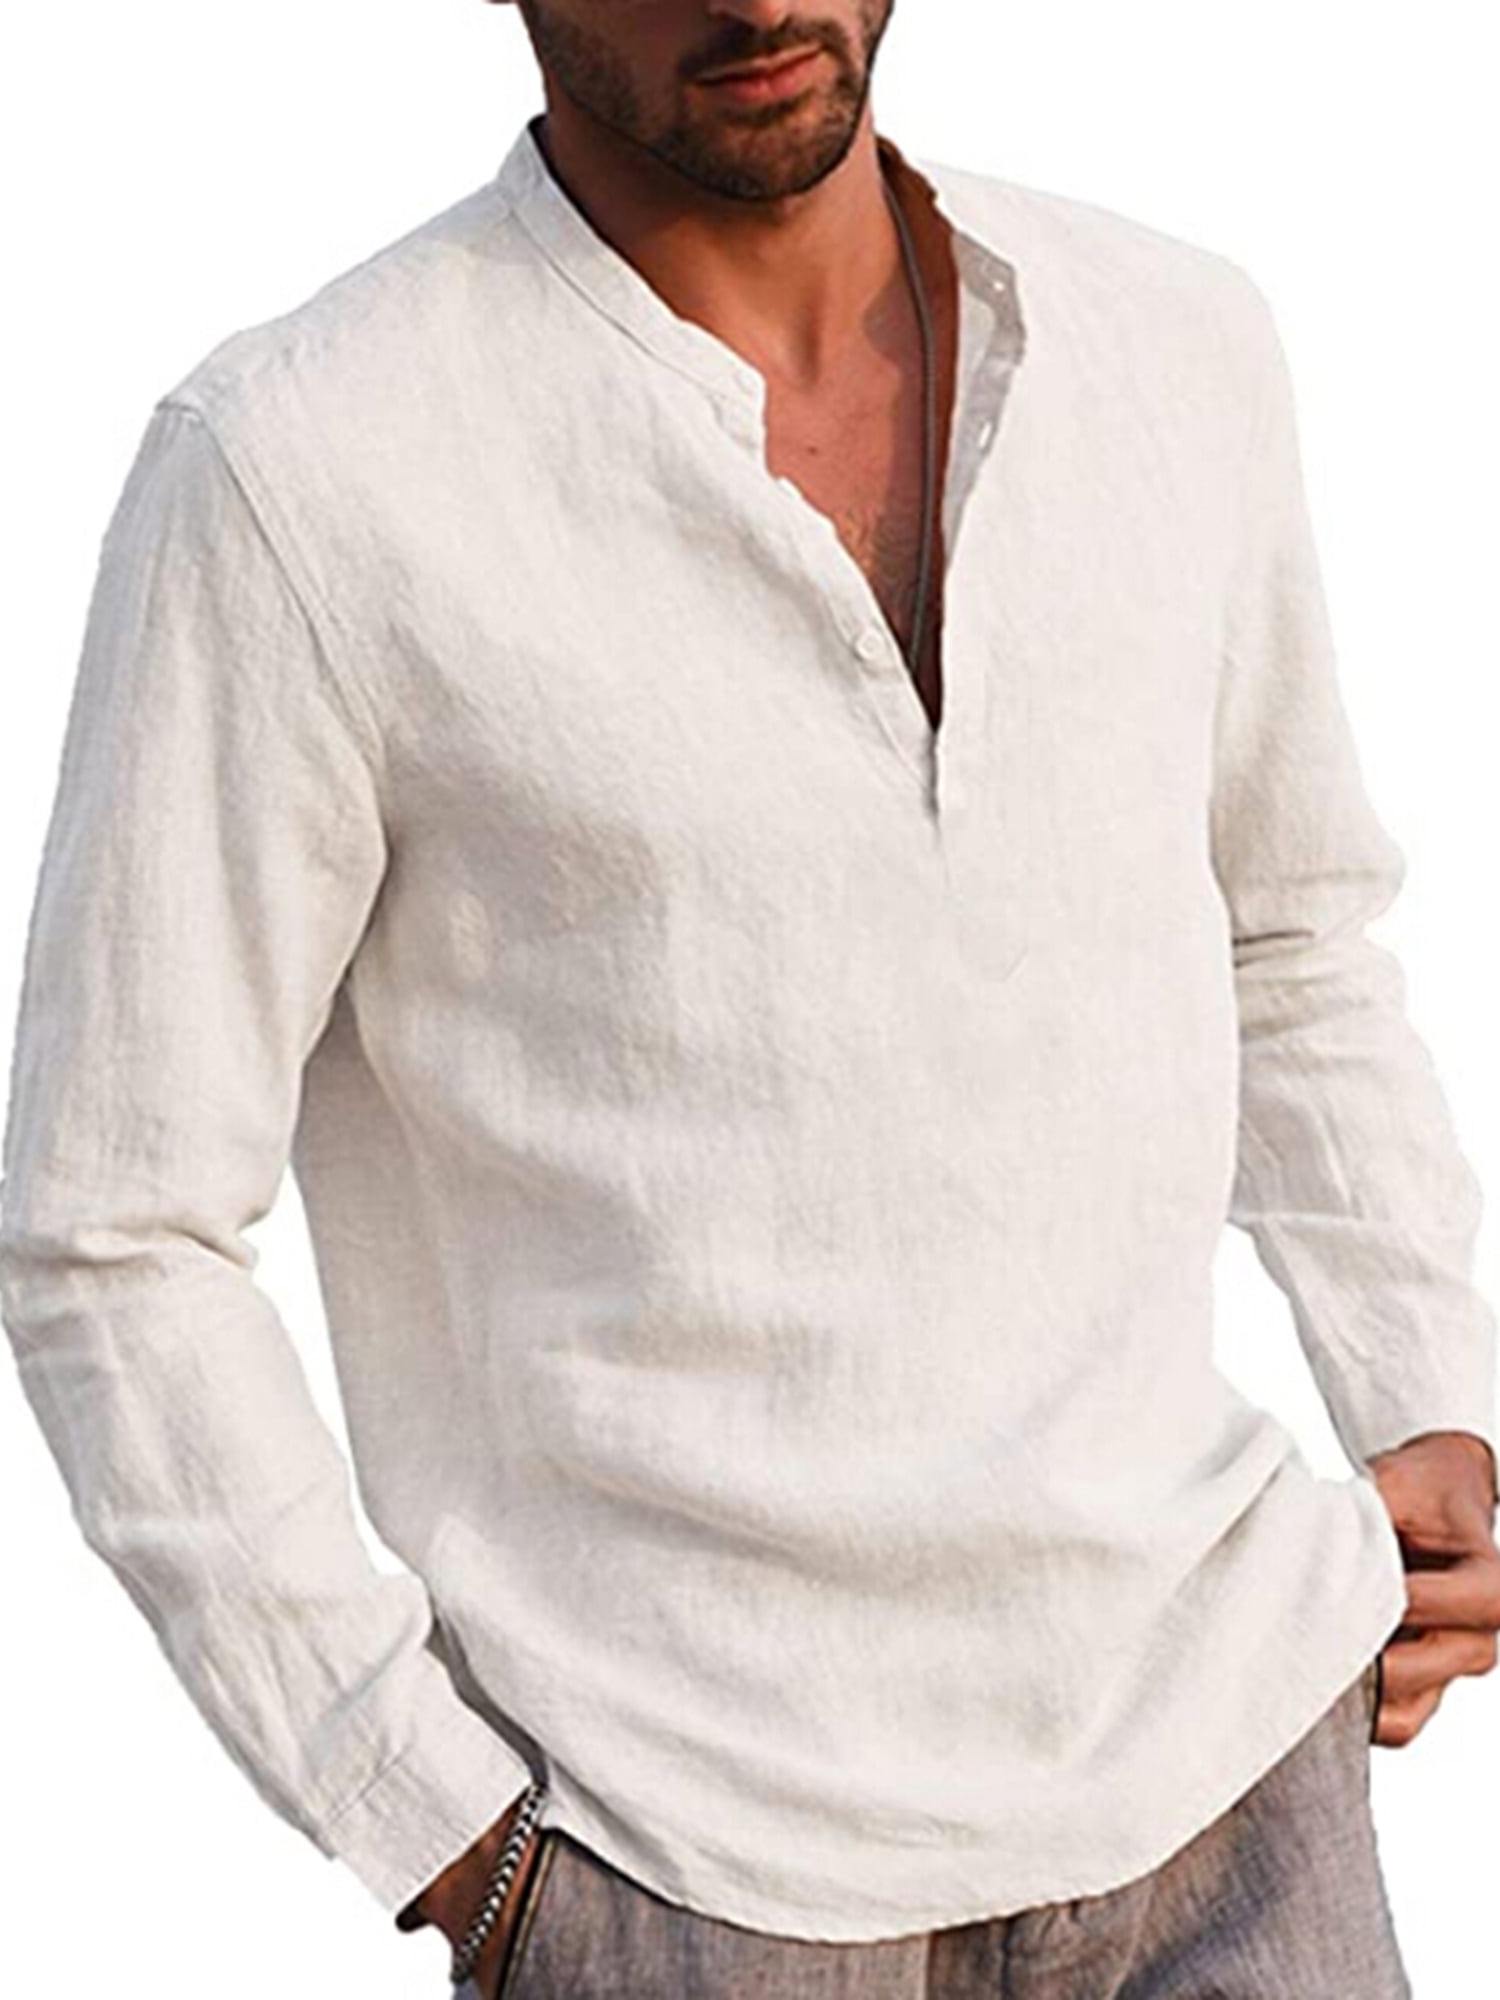 URRU Men's Linen Cotton Henley Shirt Roll-up Long Sleeve Basic Summer Shirt Band Collar Plain Yoga Tops Blouse Tee S-XXL